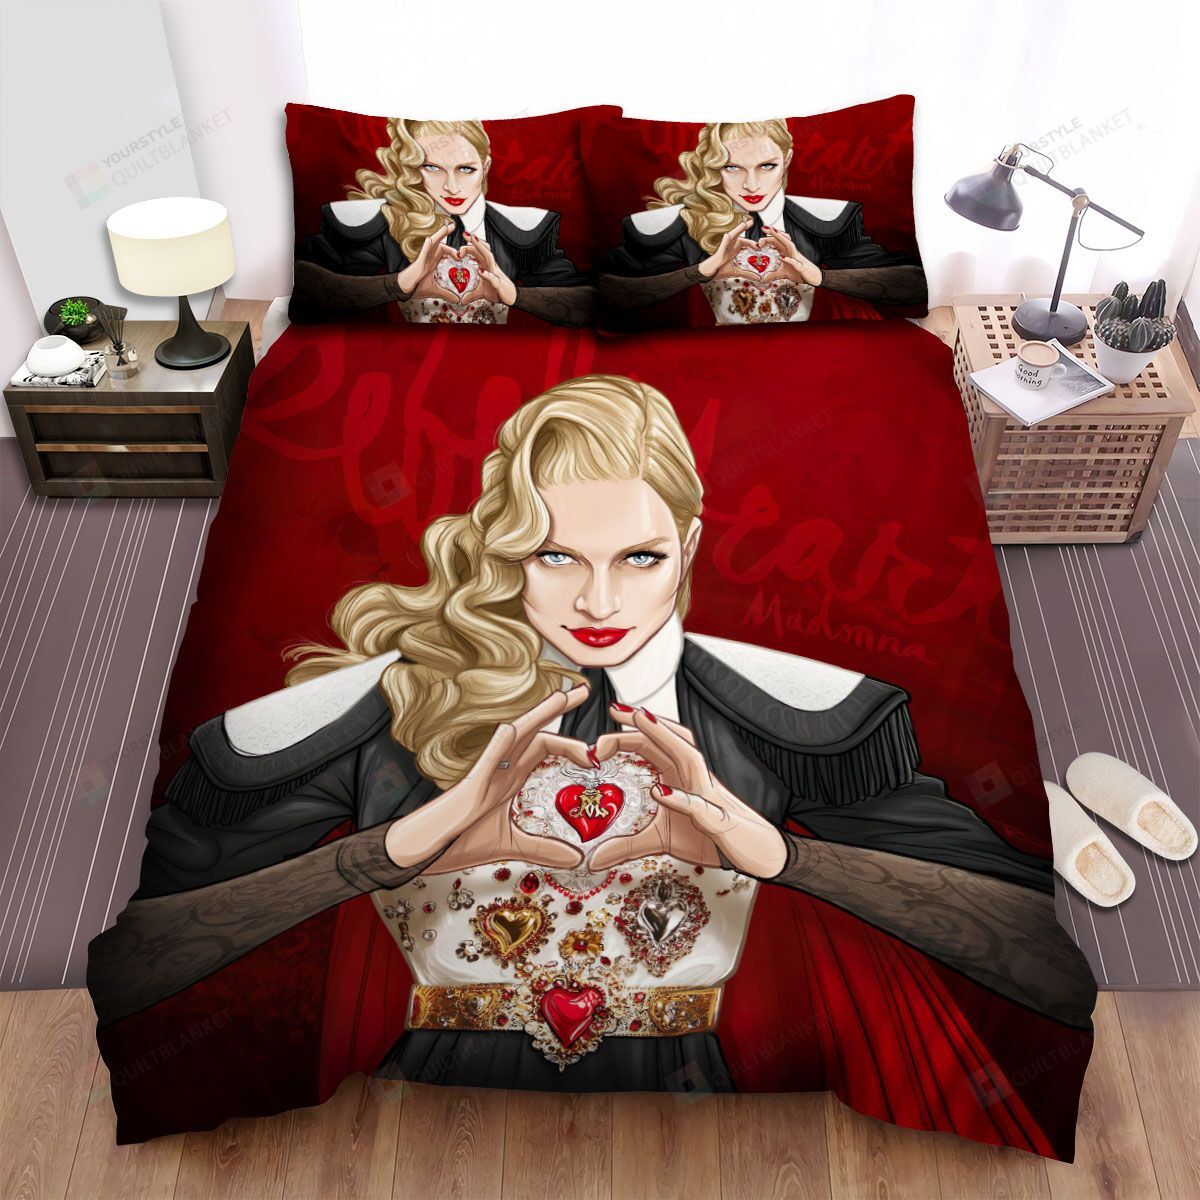 Madonna Rebel Heart Tour Artwork Bed Sheets Spread Duvet Cover Bedding Sets